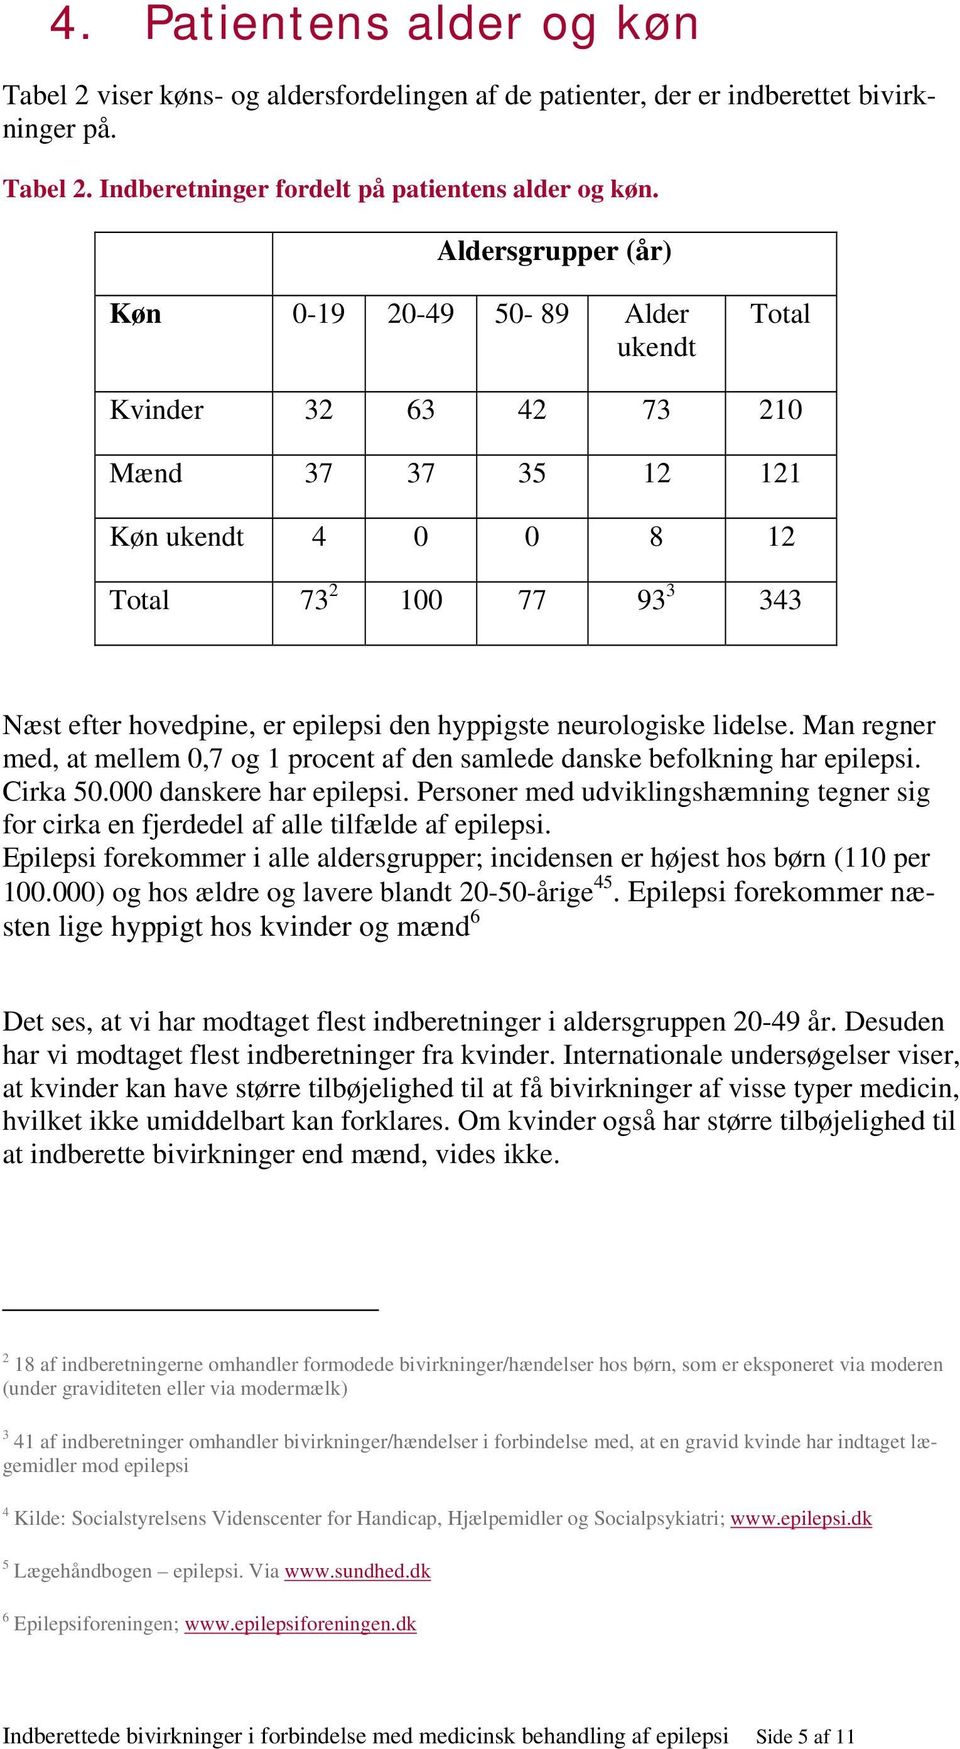 hyppigste neurologiske lidelse. Man regner med, at mellem 0,7 og 1 procent af den samlede danske befolkning har epilepsi. Cirka 50.000 danskere har epilepsi.